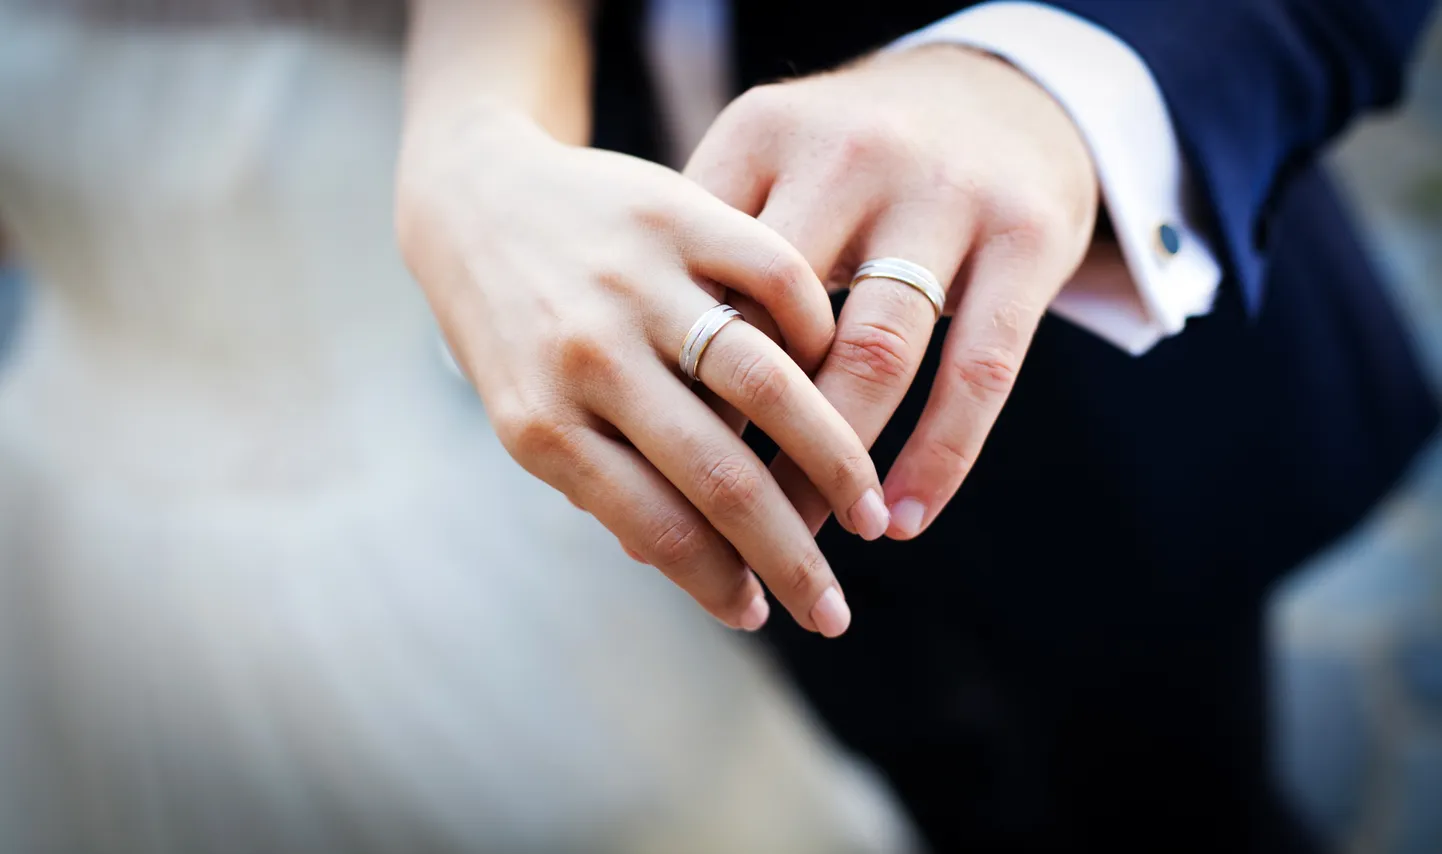 Abiellunud abielusõrmustega. Pilt on illustreeriv